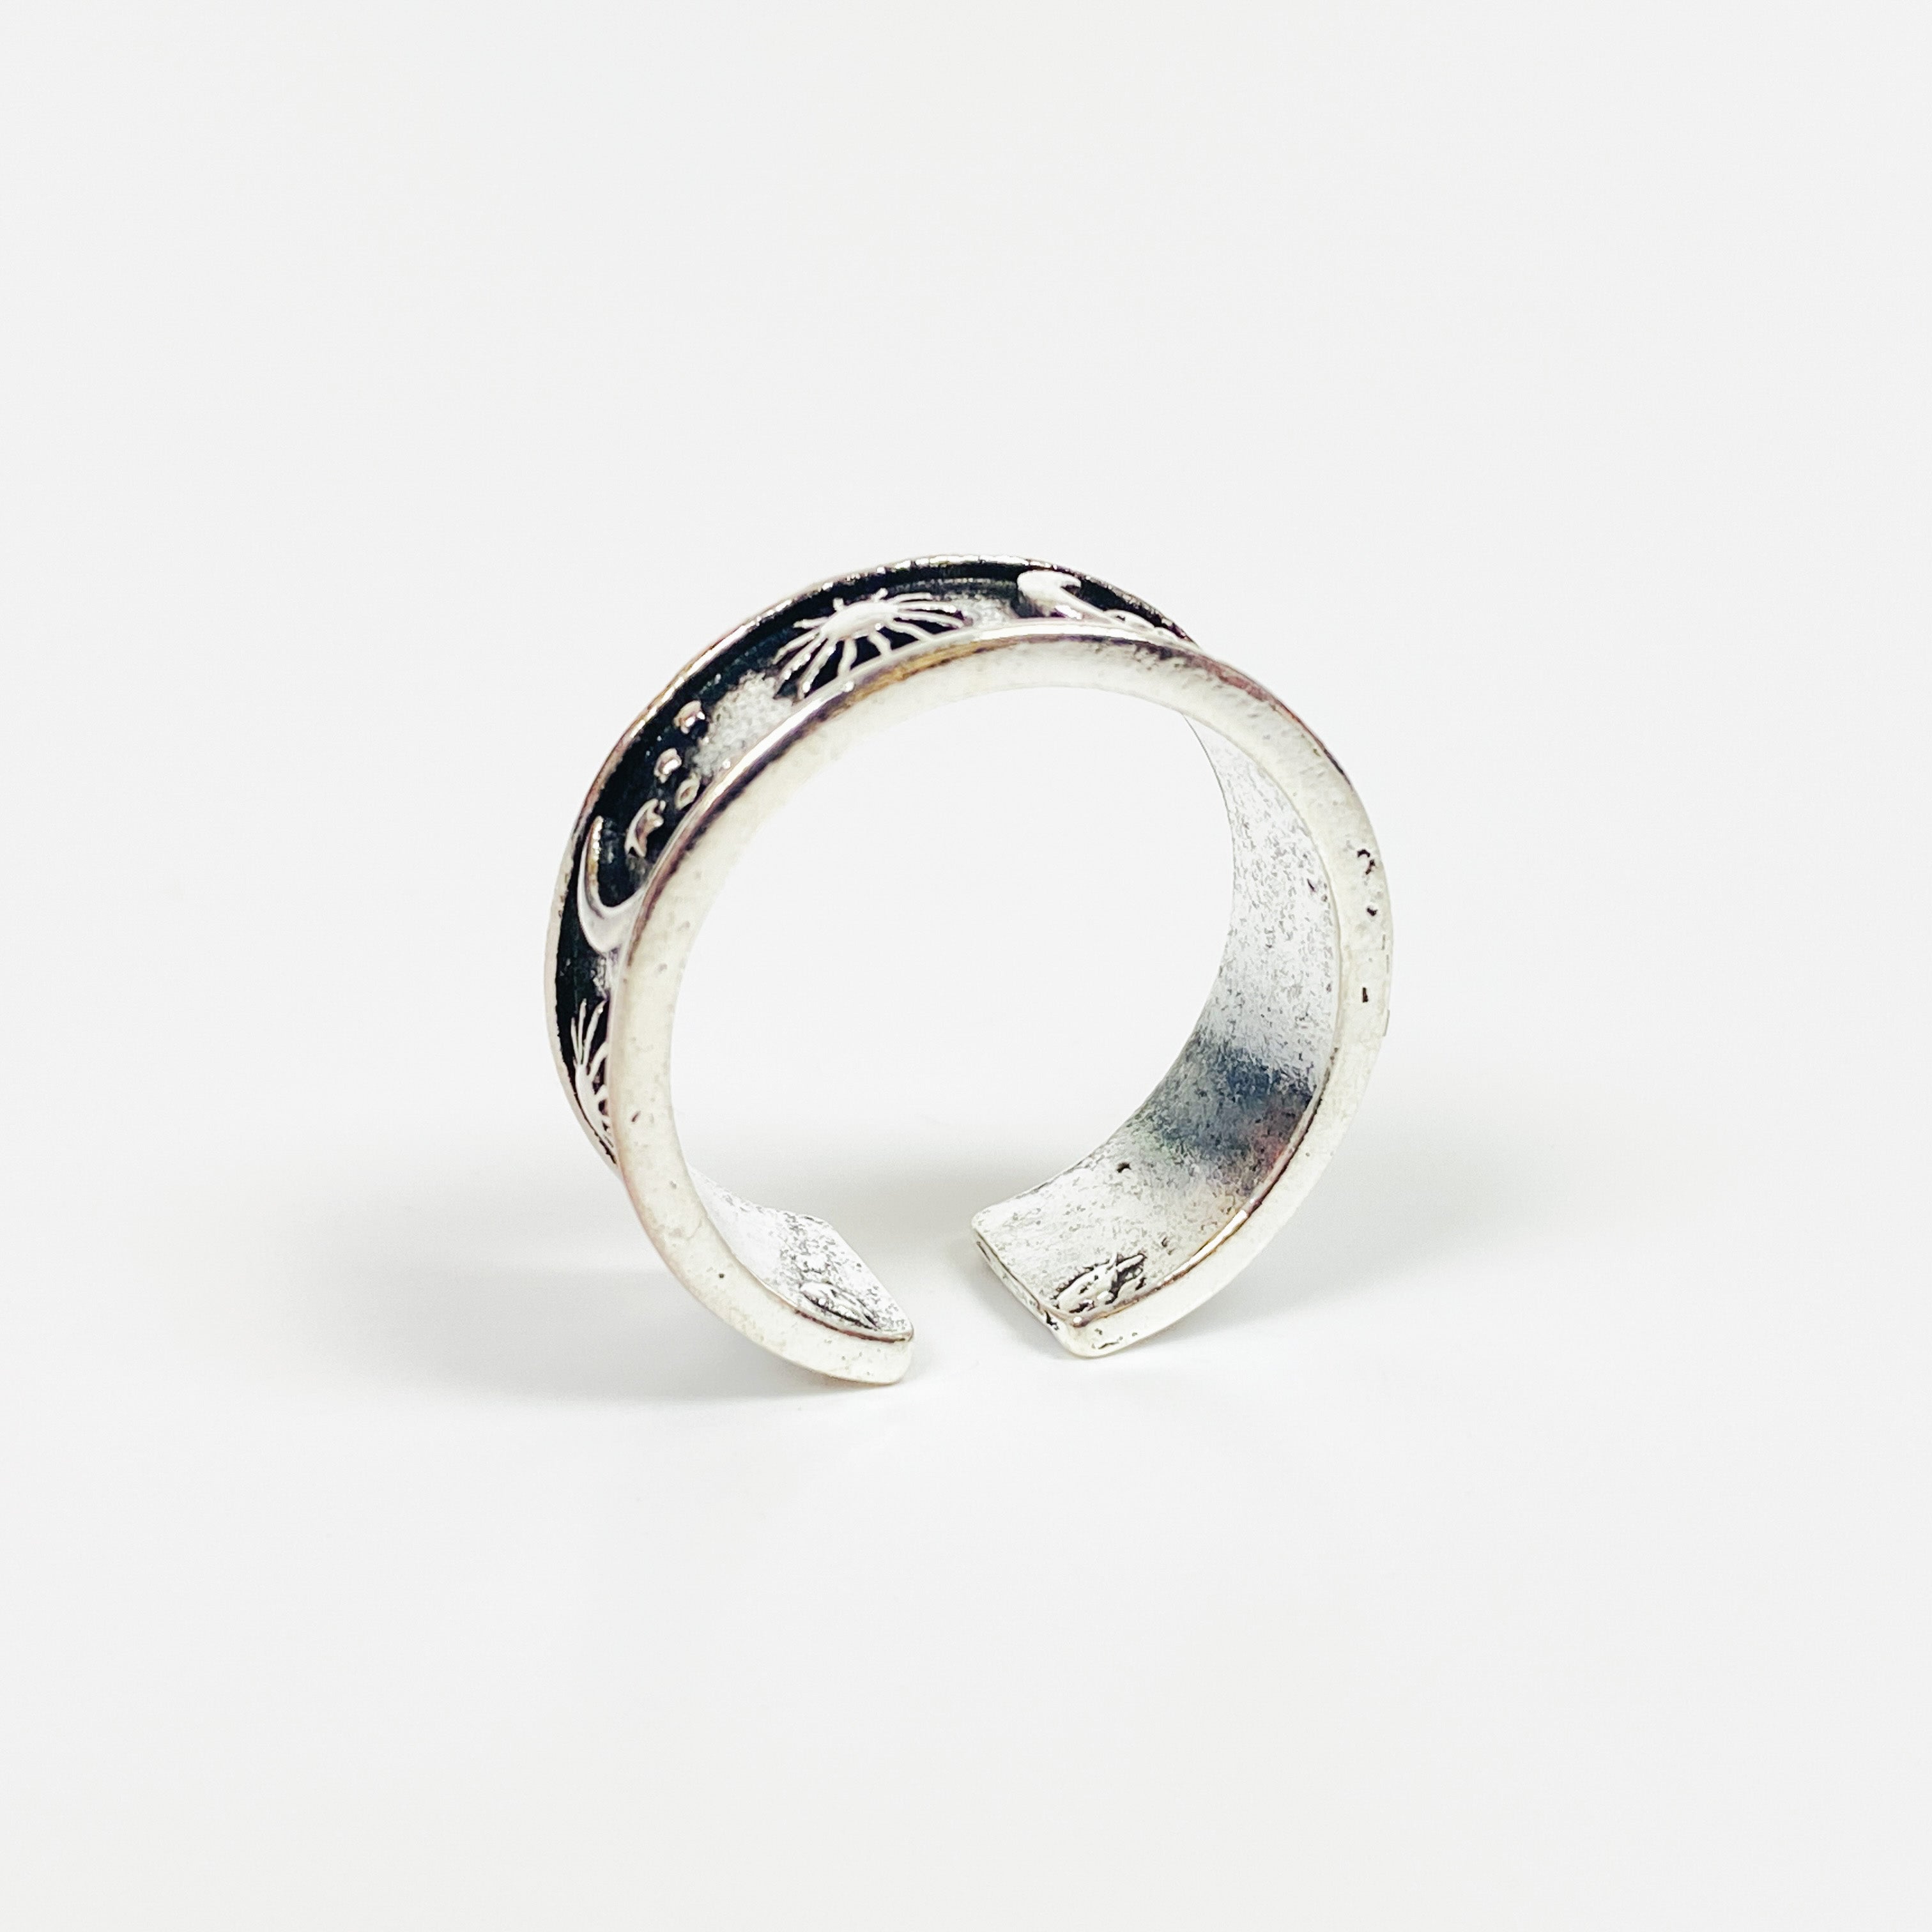 Vintage Retro Adjustable Moon Ring Silver